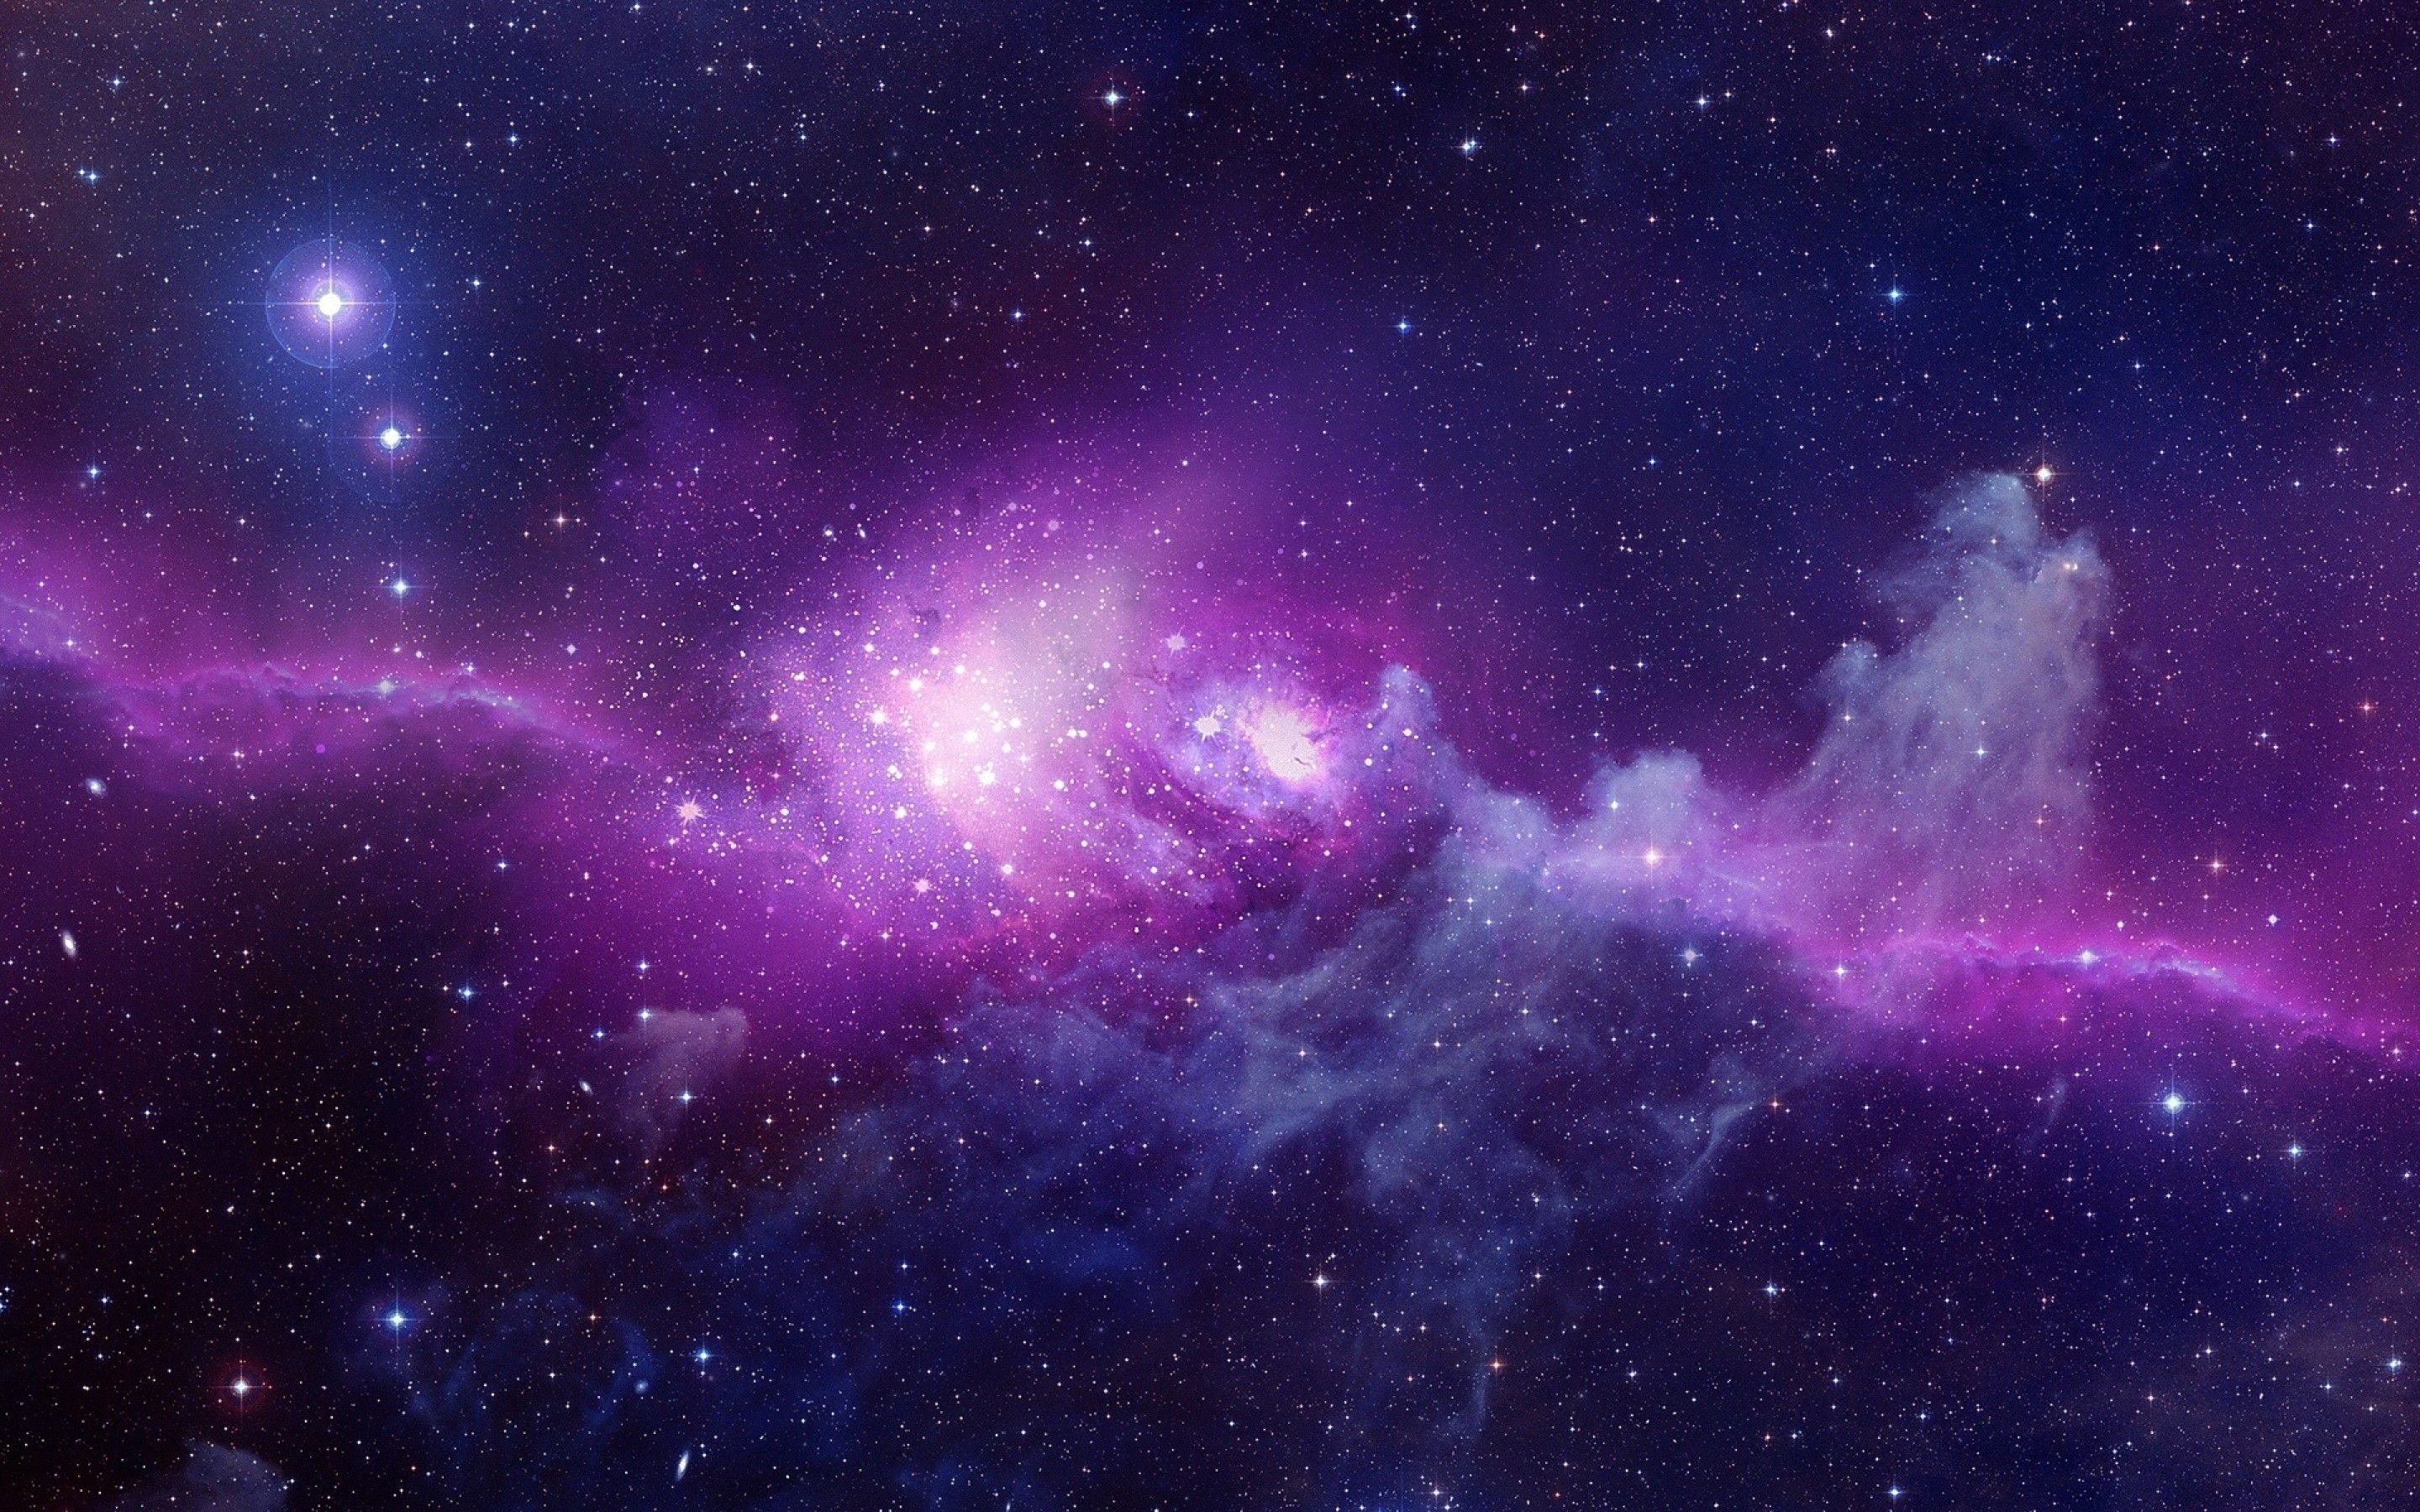 Cute Galaxy Backgrounds HD - PixelsTalk.Net - Hình nền Thiên Hà Dễ Thương: Bạn đang tìm kiếm những hình nền Thiên Hà dễ thương và độc đáo? Hãy truy cập PixelsTalk.net để khám phá những hình nền với các chú ngựa vằn, động vật và hoạt hình được tạo nên từ các vật thể thiên hà đáng yêu. Hãy cùng thư giãn và chiêm ngưỡng vẻ đẹp vô tận của vũ trụ.